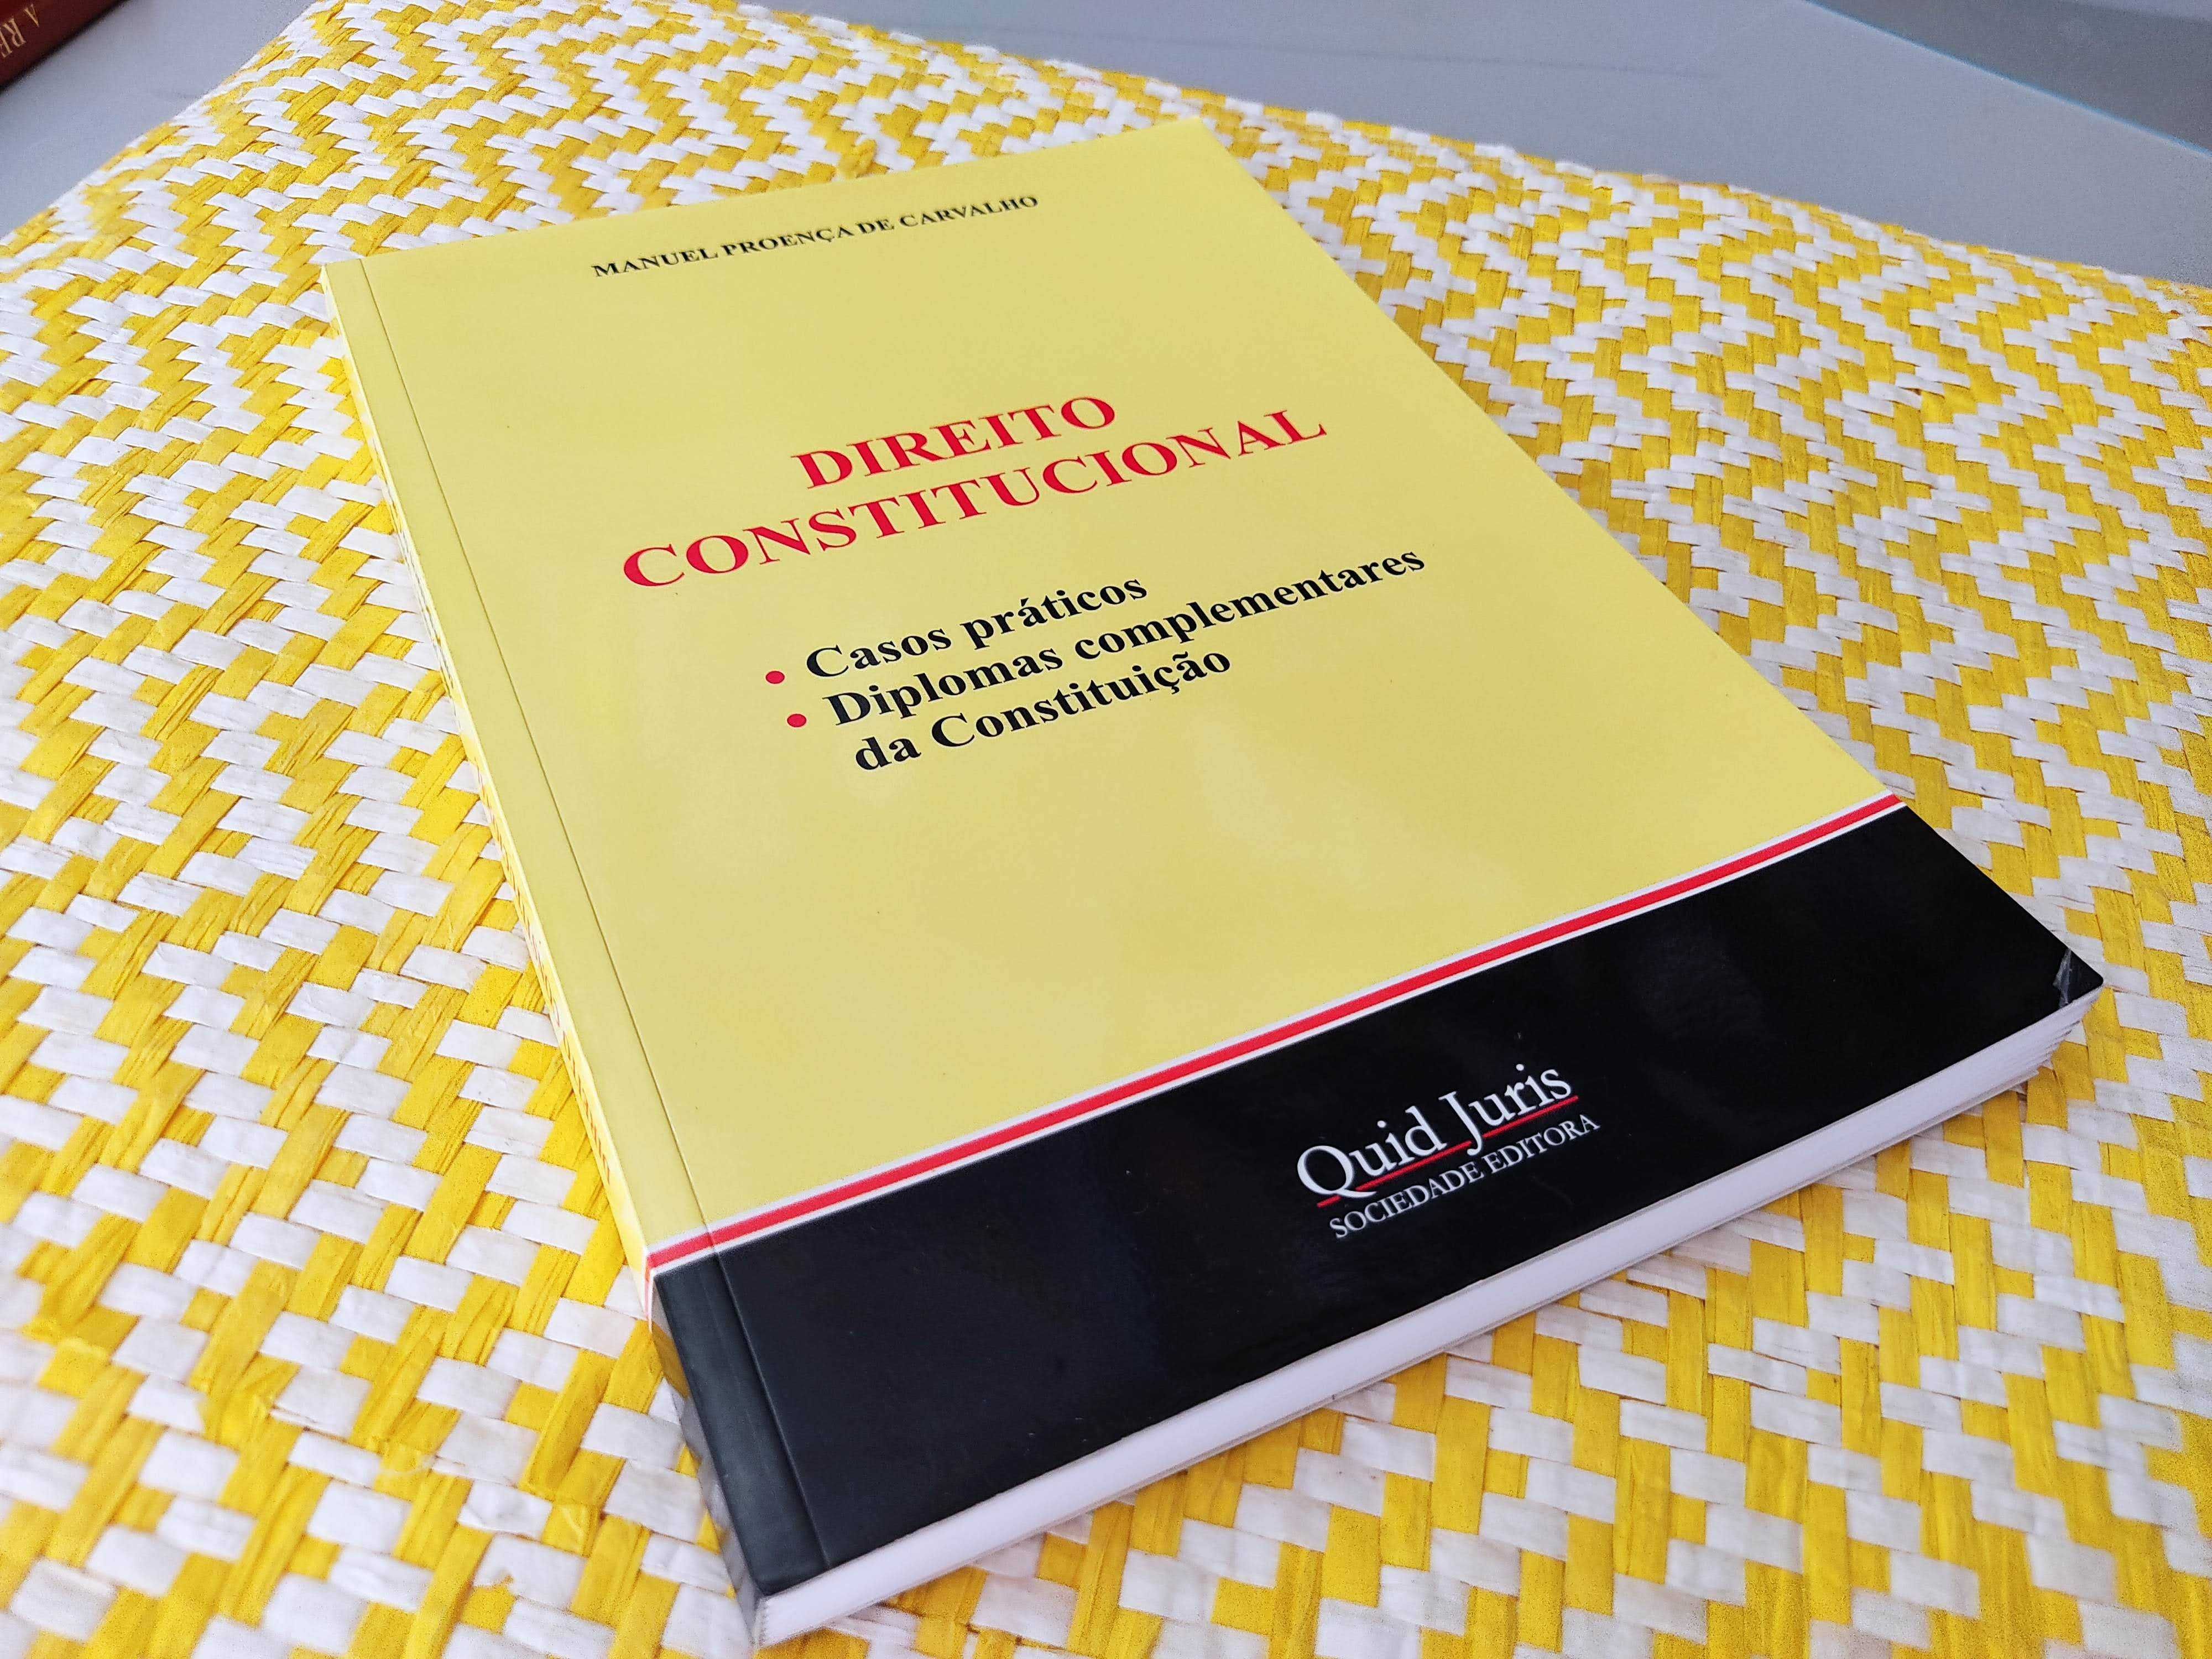 DIREITO CONSTITUCIONAL - Casos práticos
Manuel Proença de Carvalho